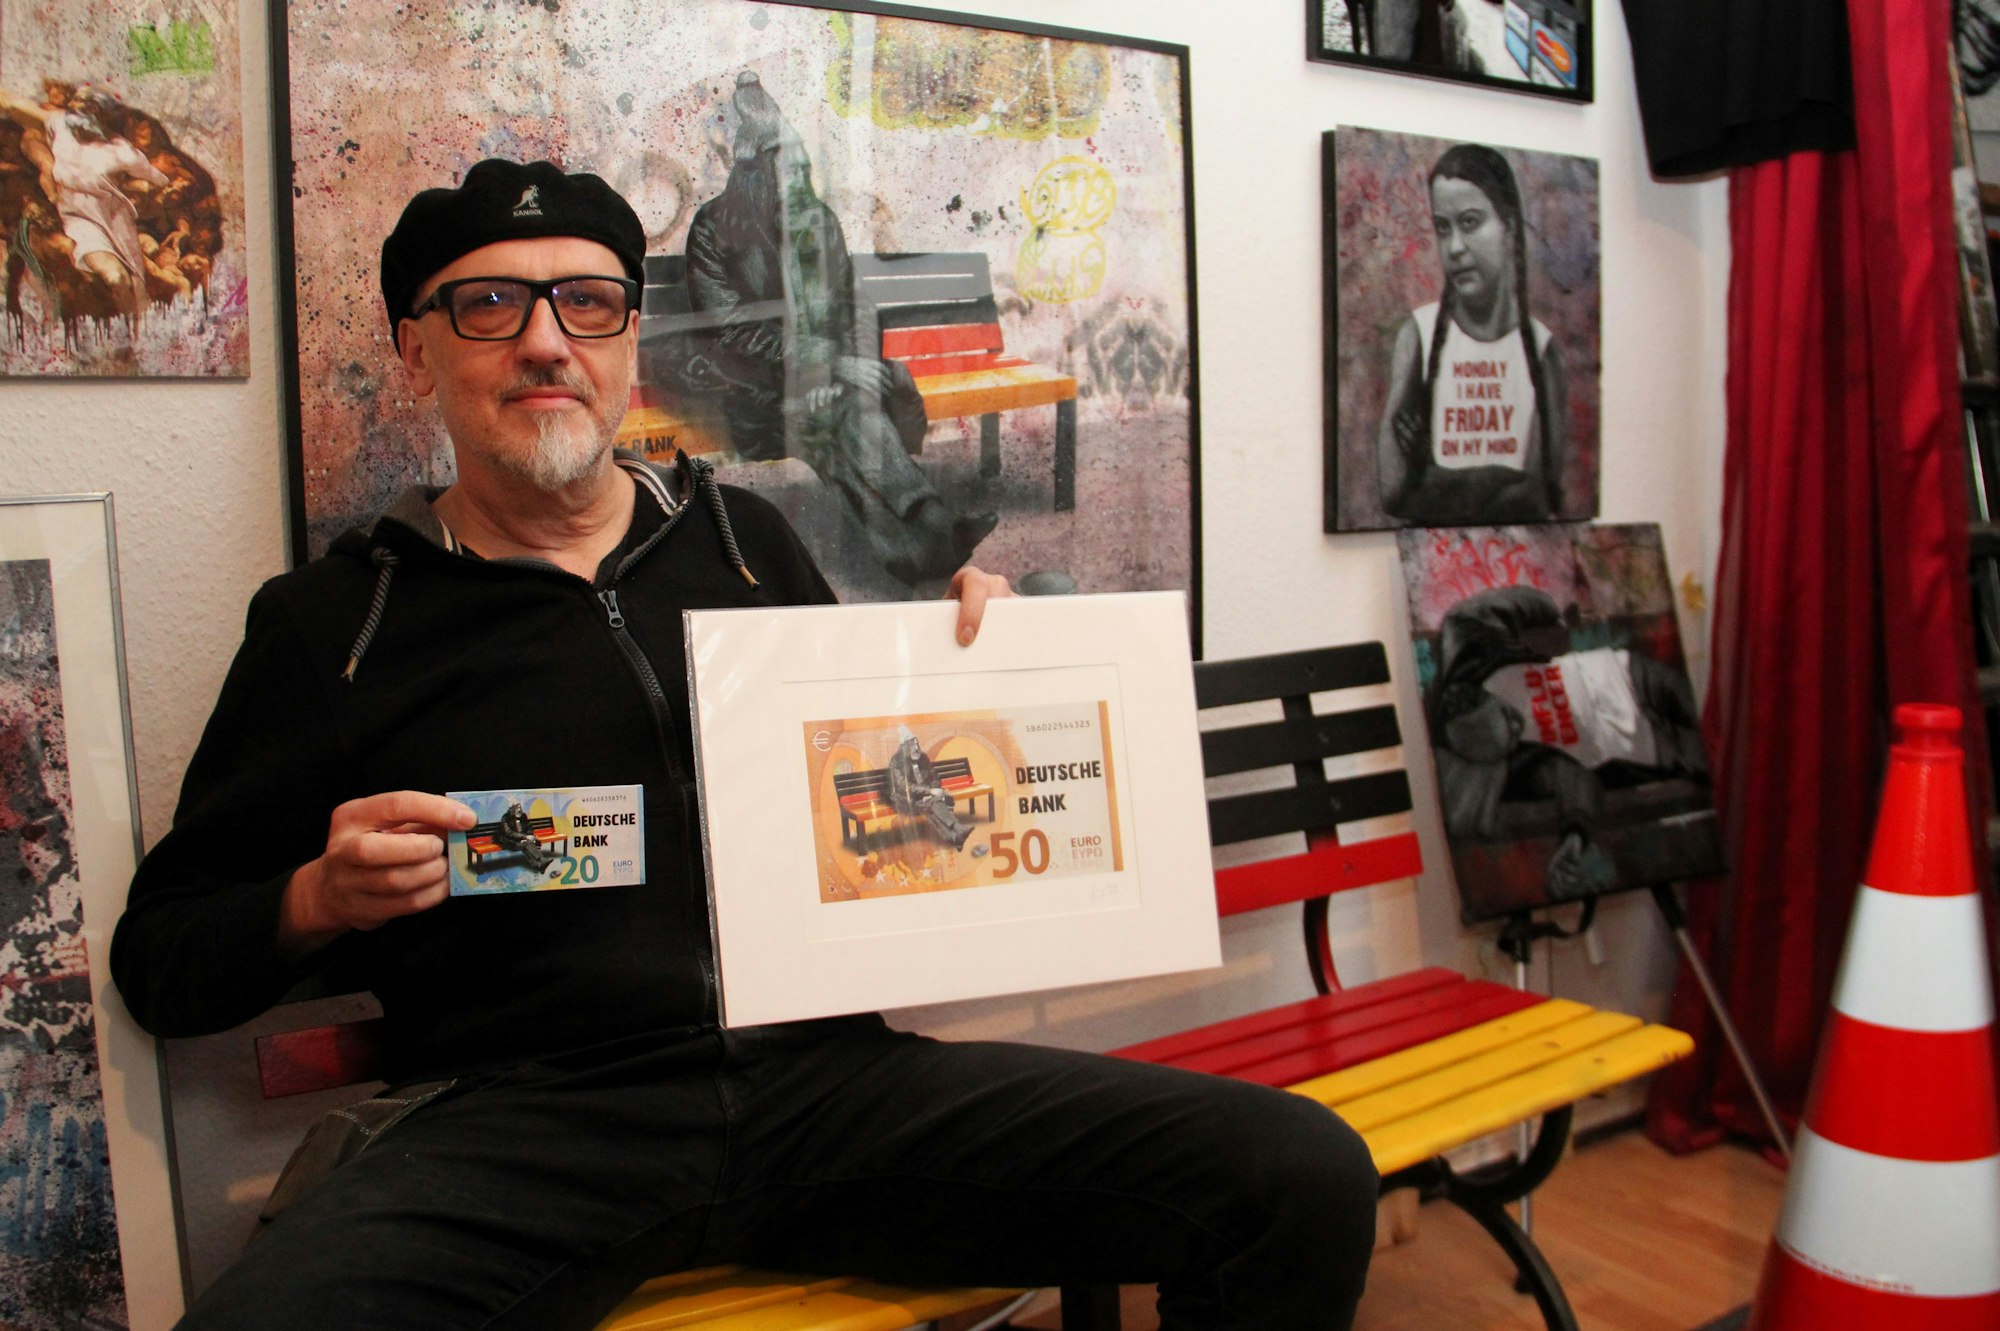 Der Künstler Peter Mück hält seine Werke in der Hand: Abbilder eines 20-Euro-Scheins und eines 50-Euro-Scheins. Darauf ist das Motiv eines Mannes, der auf einer schwarz-rot-golden lackierten Bank sitzt, zu erkennen.